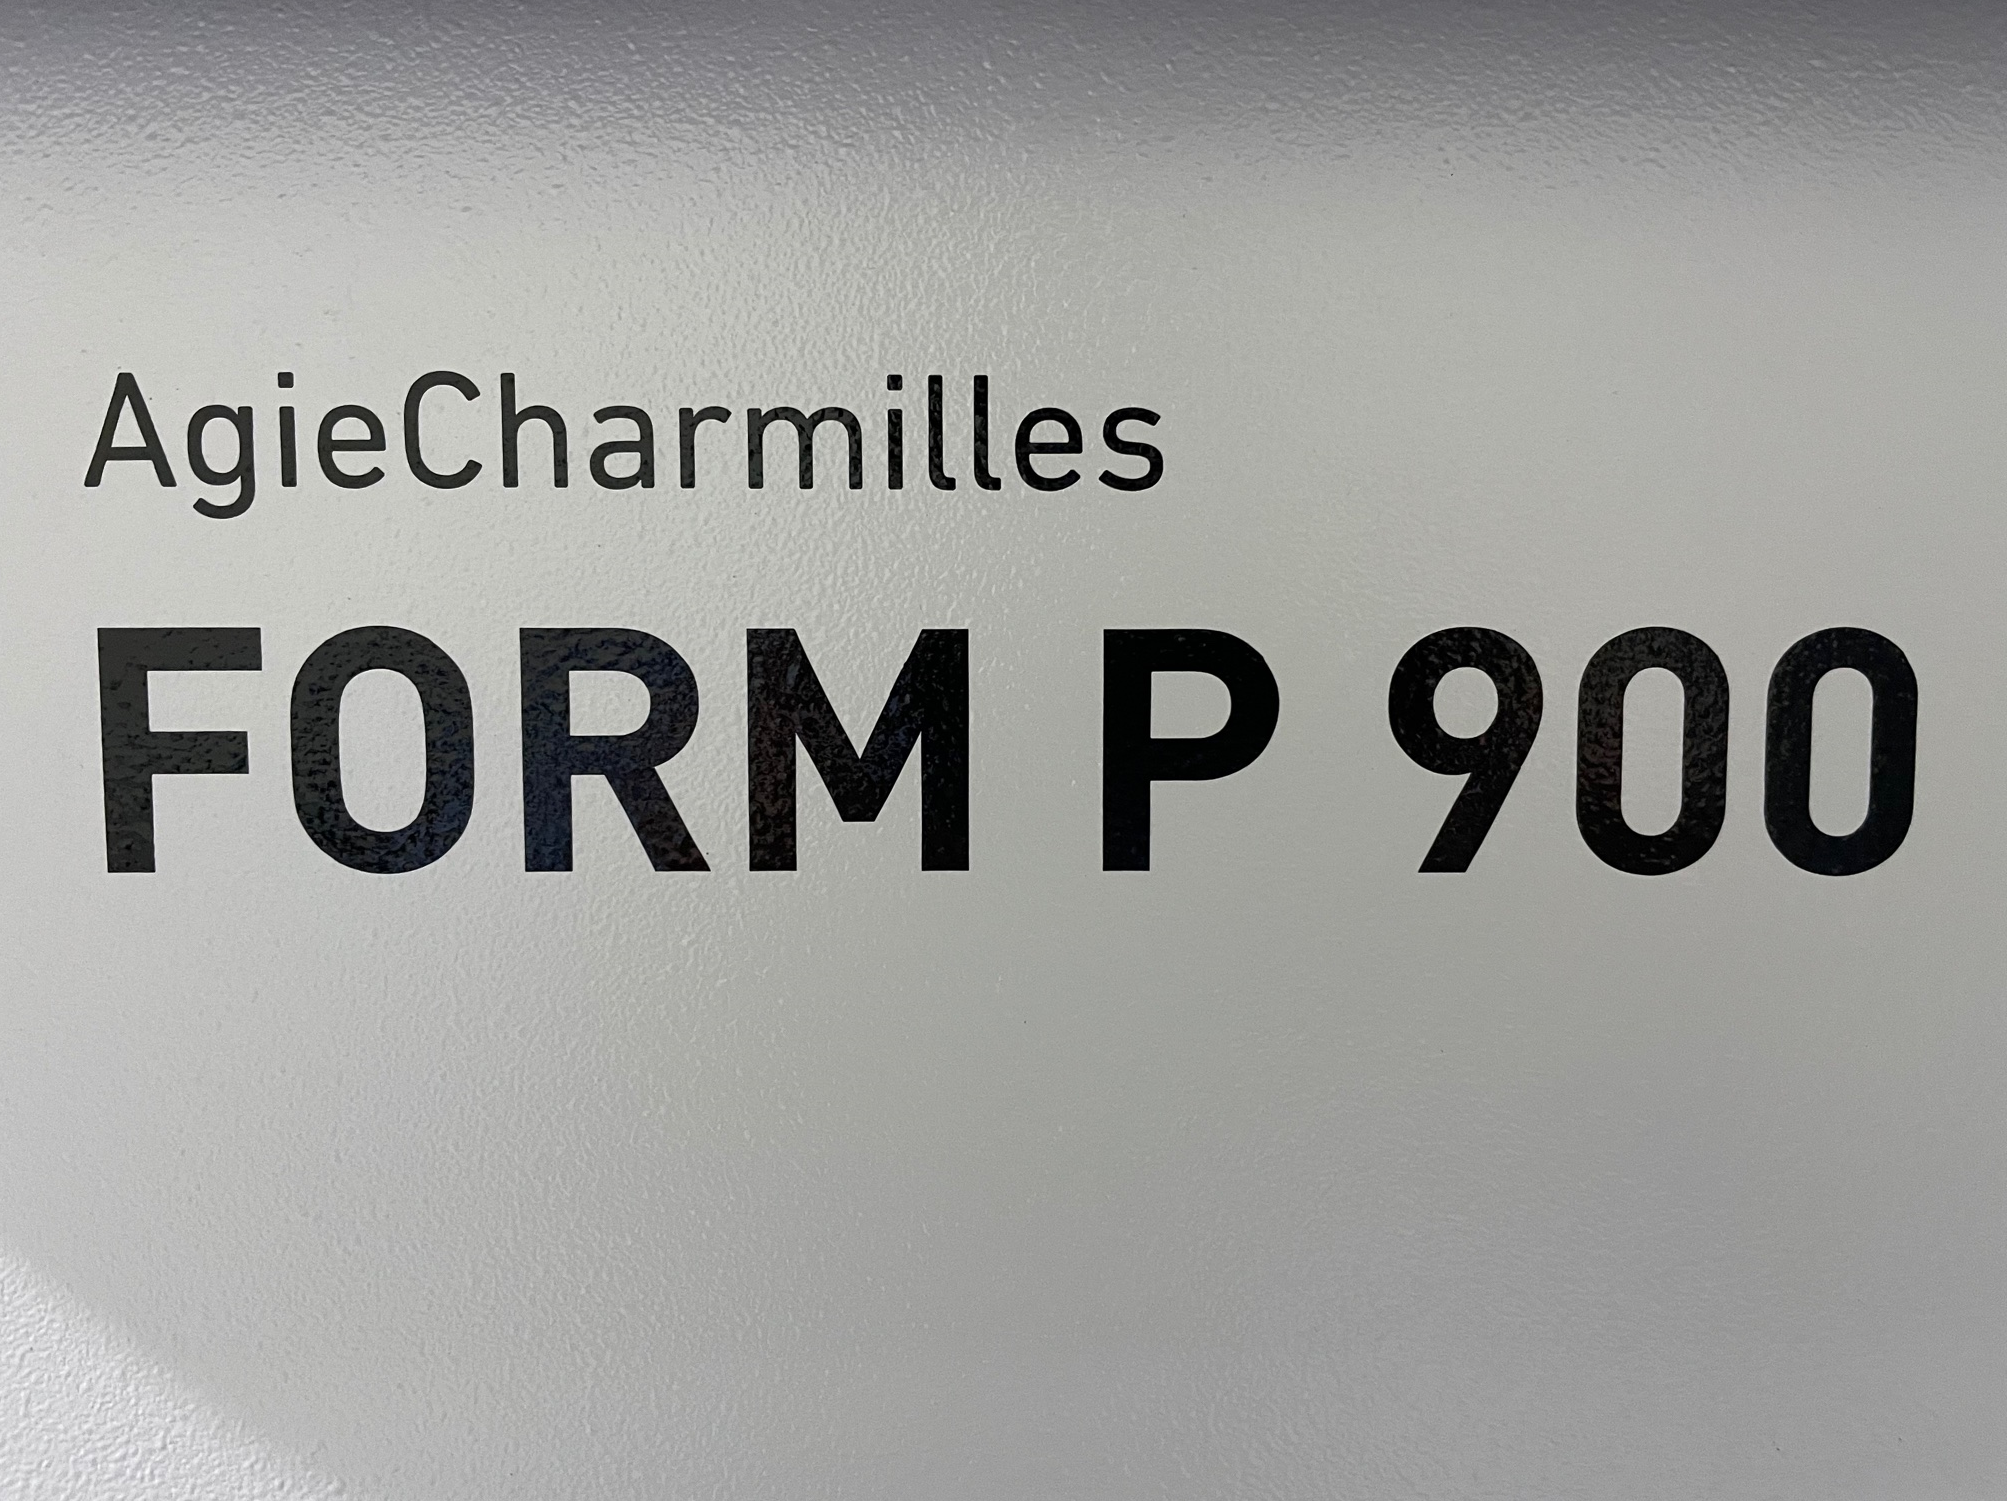 AgieCharmilles FORM P900